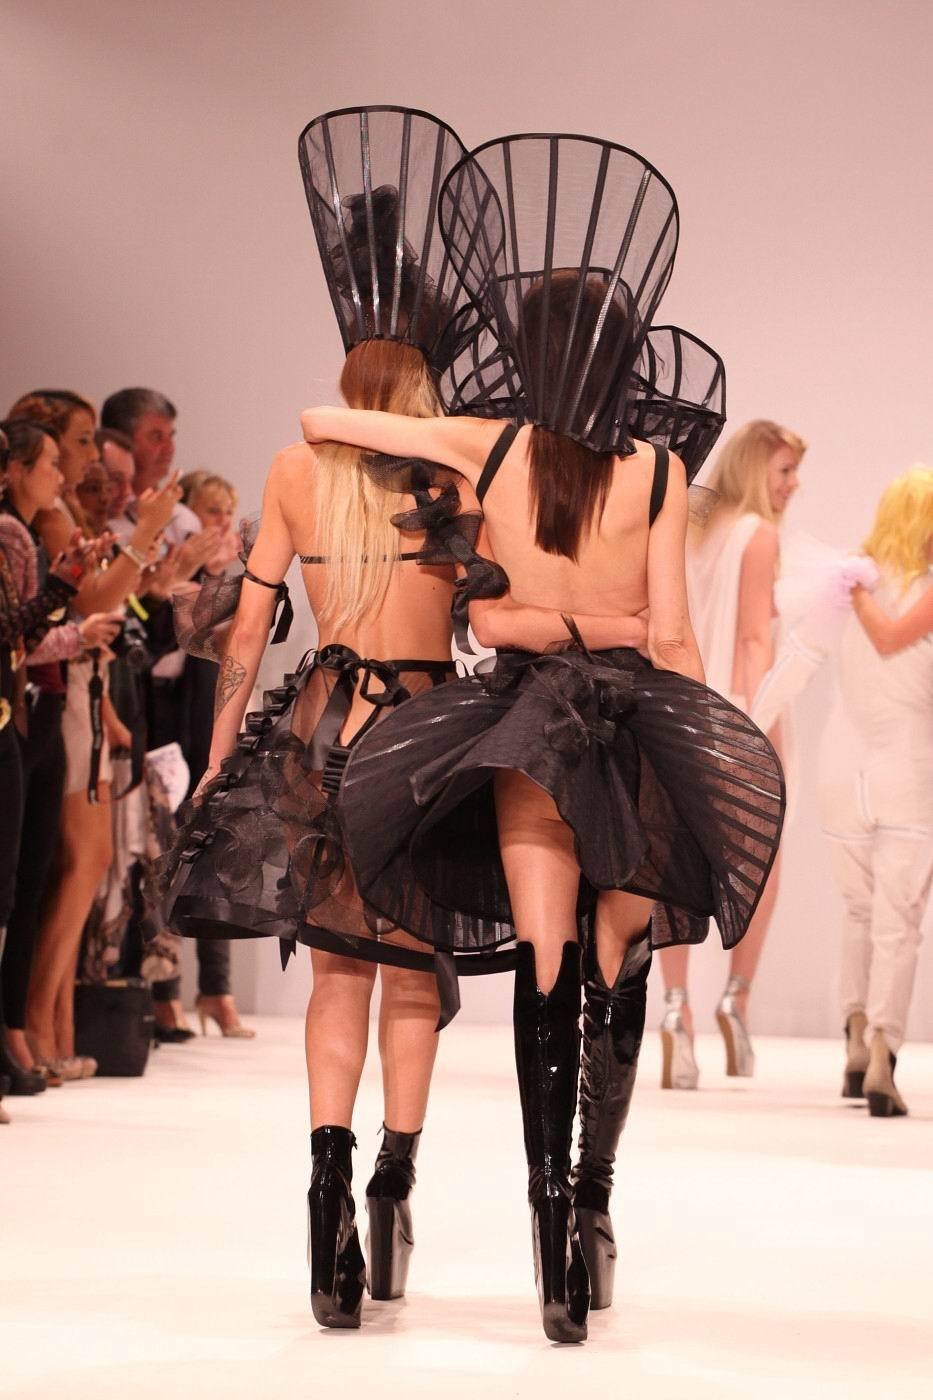 Kontroverzní návrhářka Pam Hogg představila nové modely ze sexshopu